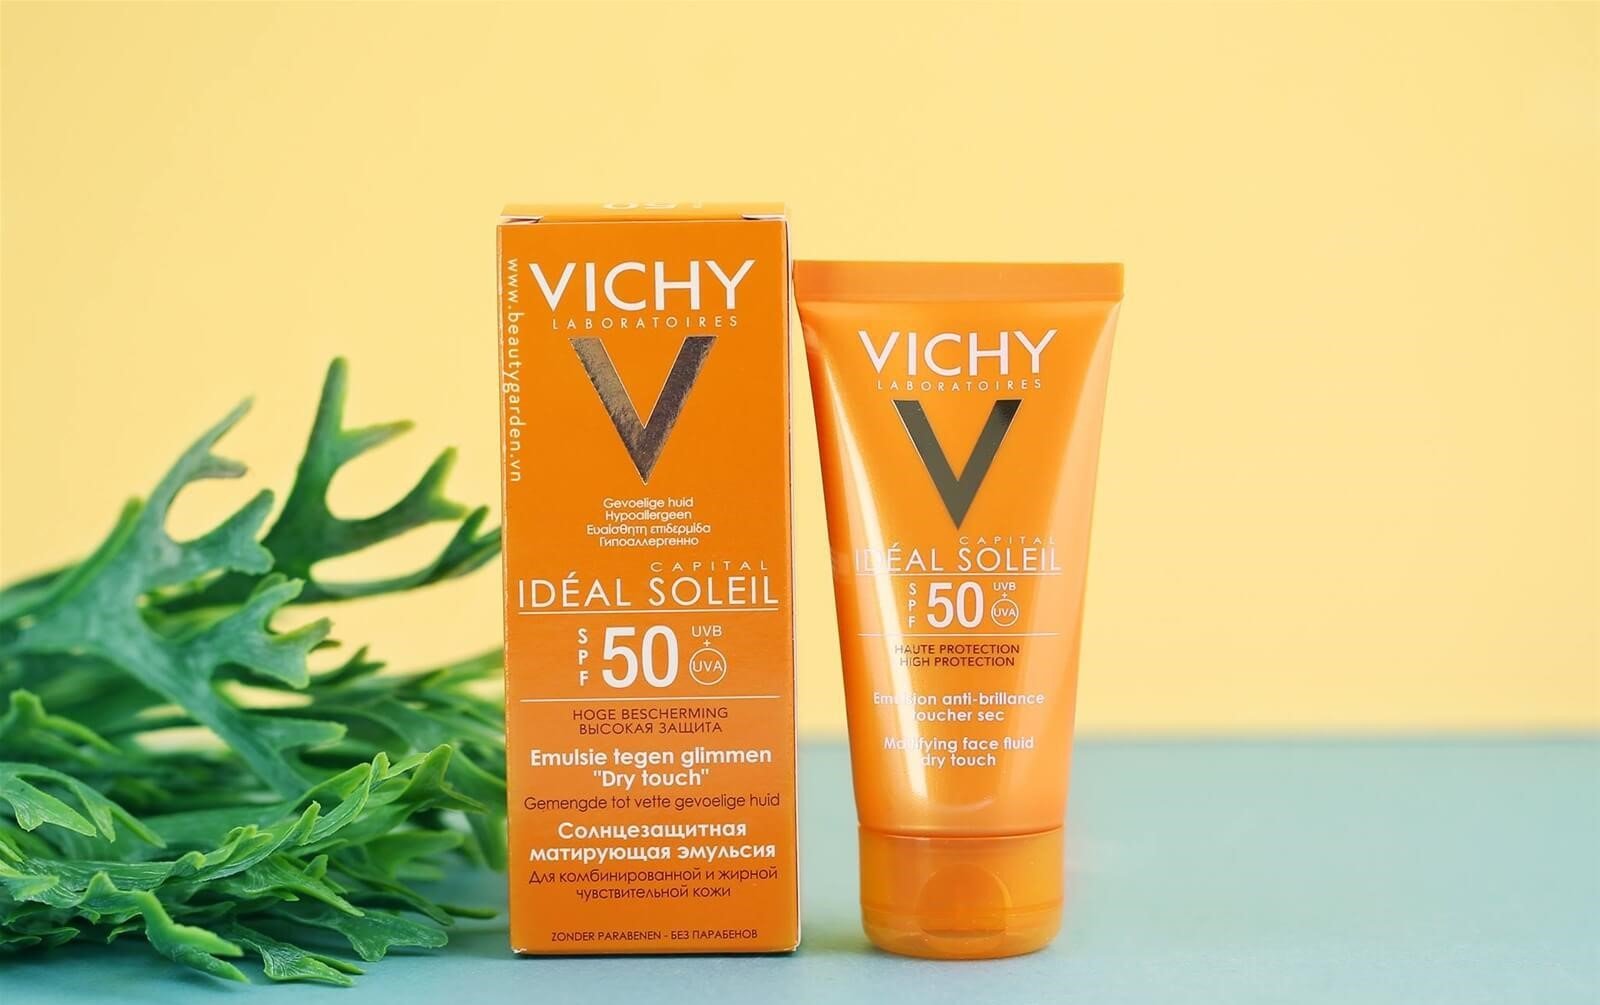 Review ưu nhược điểm của kem chống nắng Vichy mẫu mới 3 in 1; thì đây là dòng kem chống nắng 3 trong 1; kết hợp hóa học và vật lý nên kem thẩm thấu nhanh vào da; và bảo vệ da khỏi tia UV.